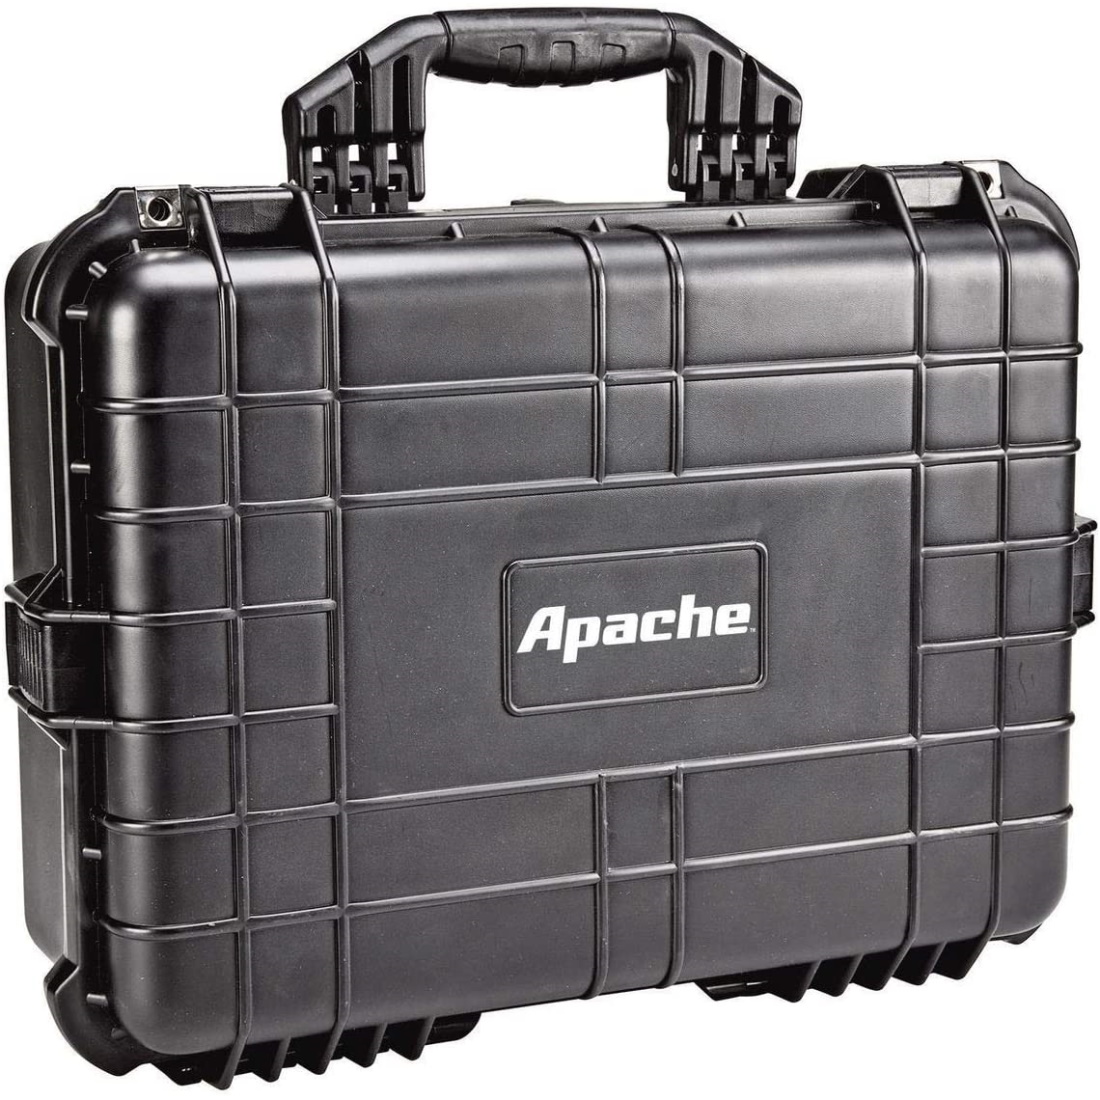 Apache-4800 Case + Custom Foam